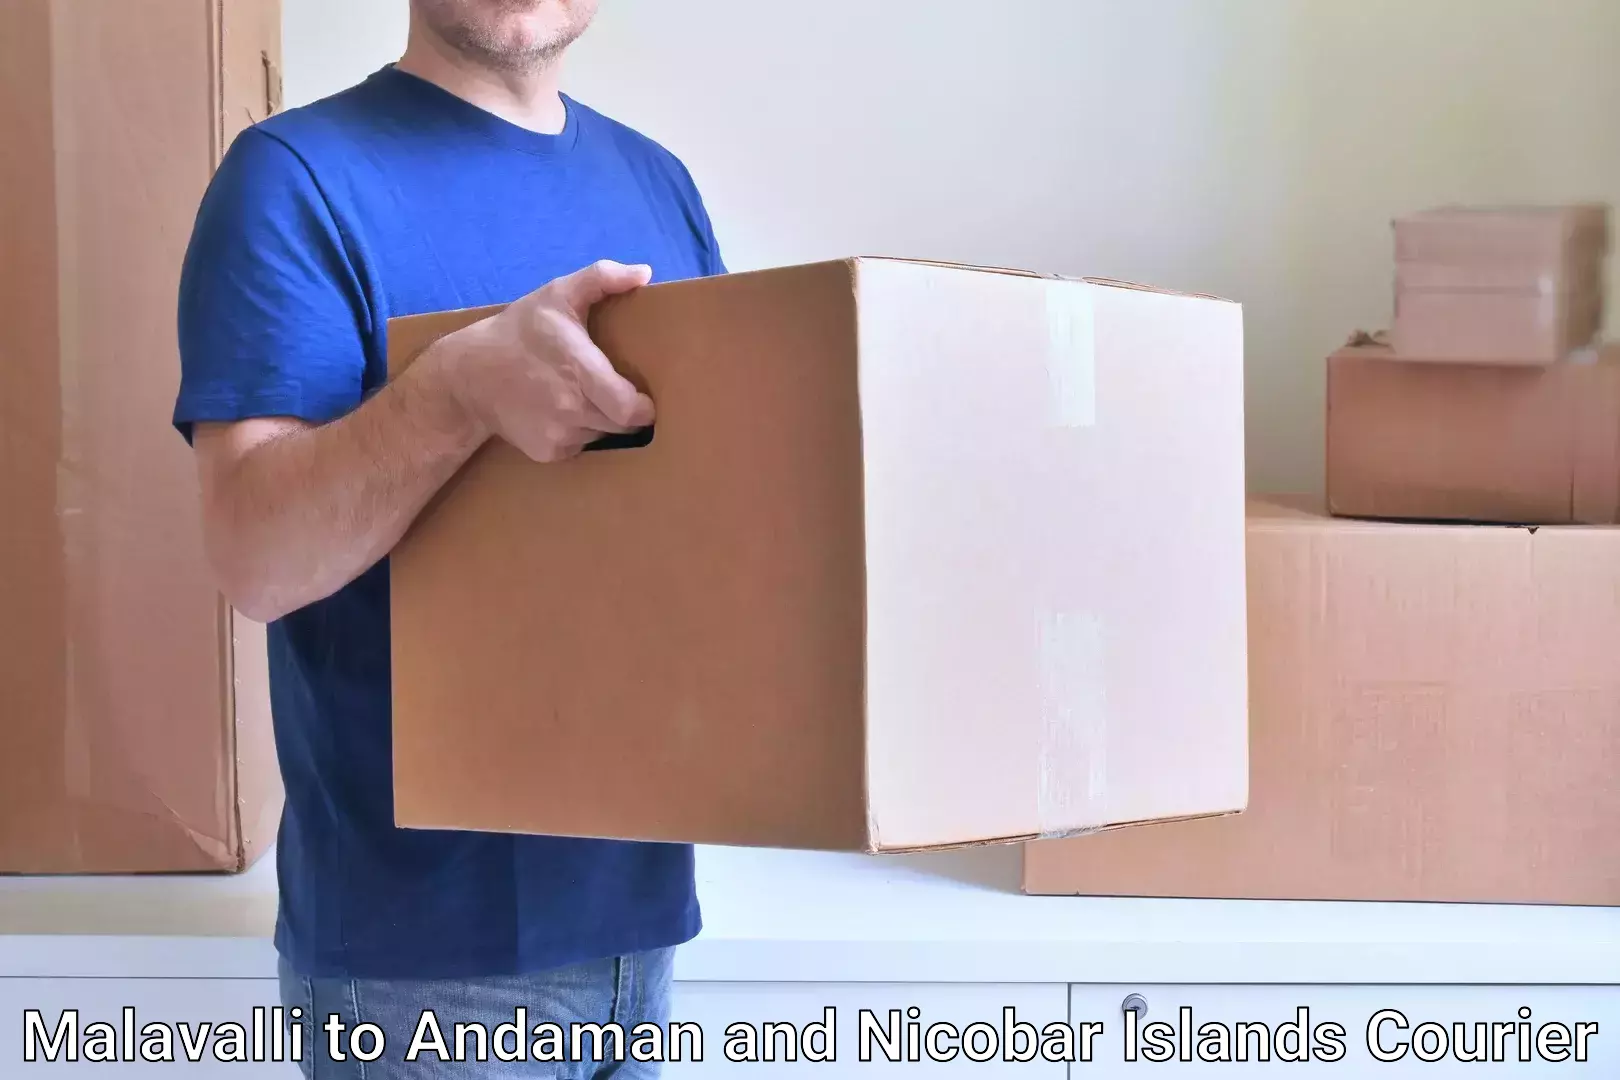 Regular parcel service Malavalli to Andaman and Nicobar Islands